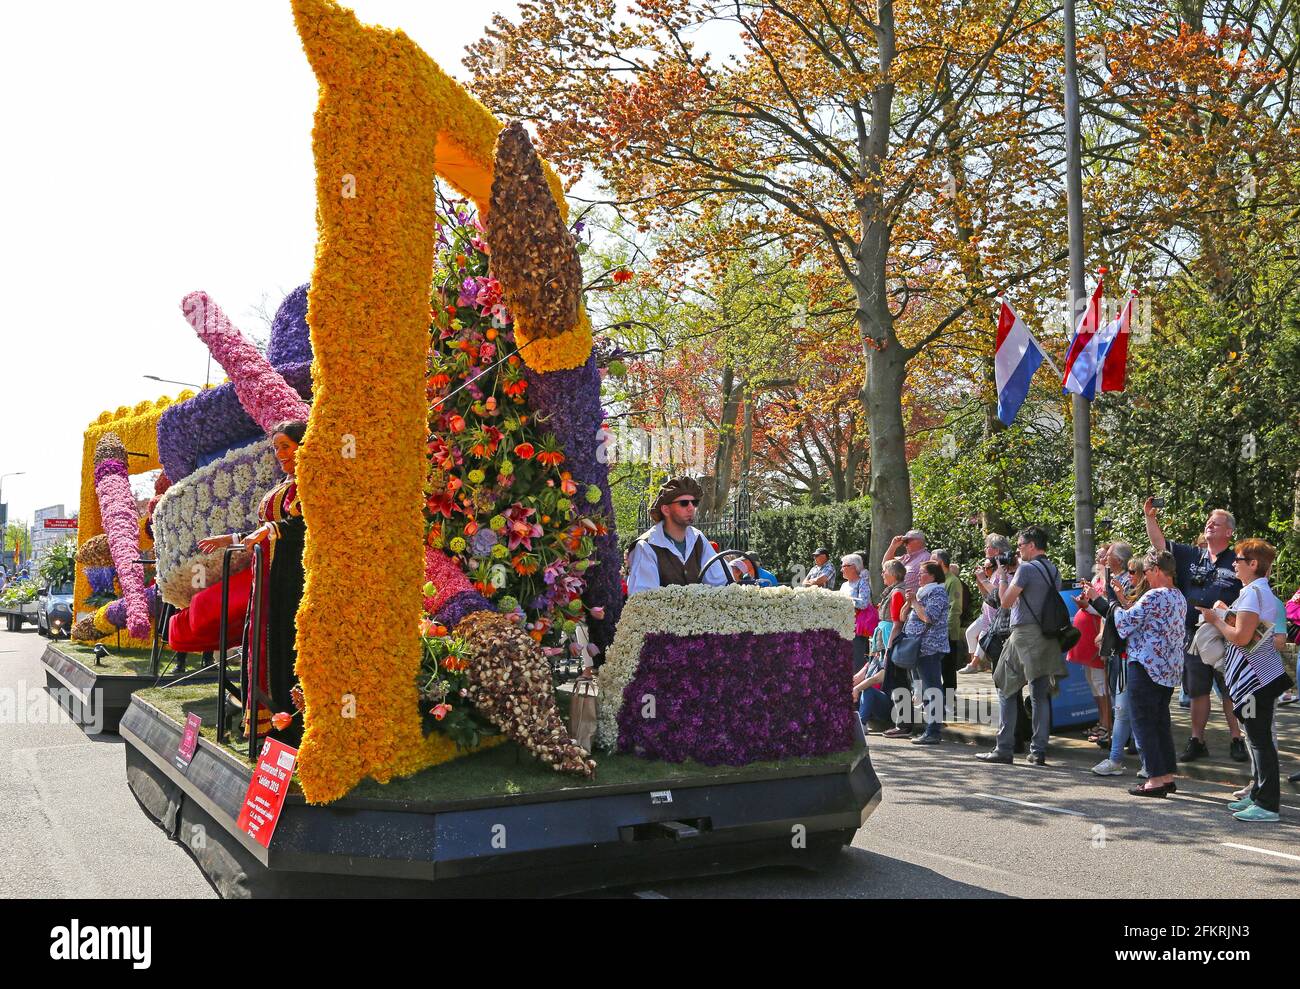 Sassenheim, Niederlande – 21. April 2018: 100 Jahre Bloemencorso Bollenstreek Blumenparade traditioneller Volksfeiertag Stockfoto